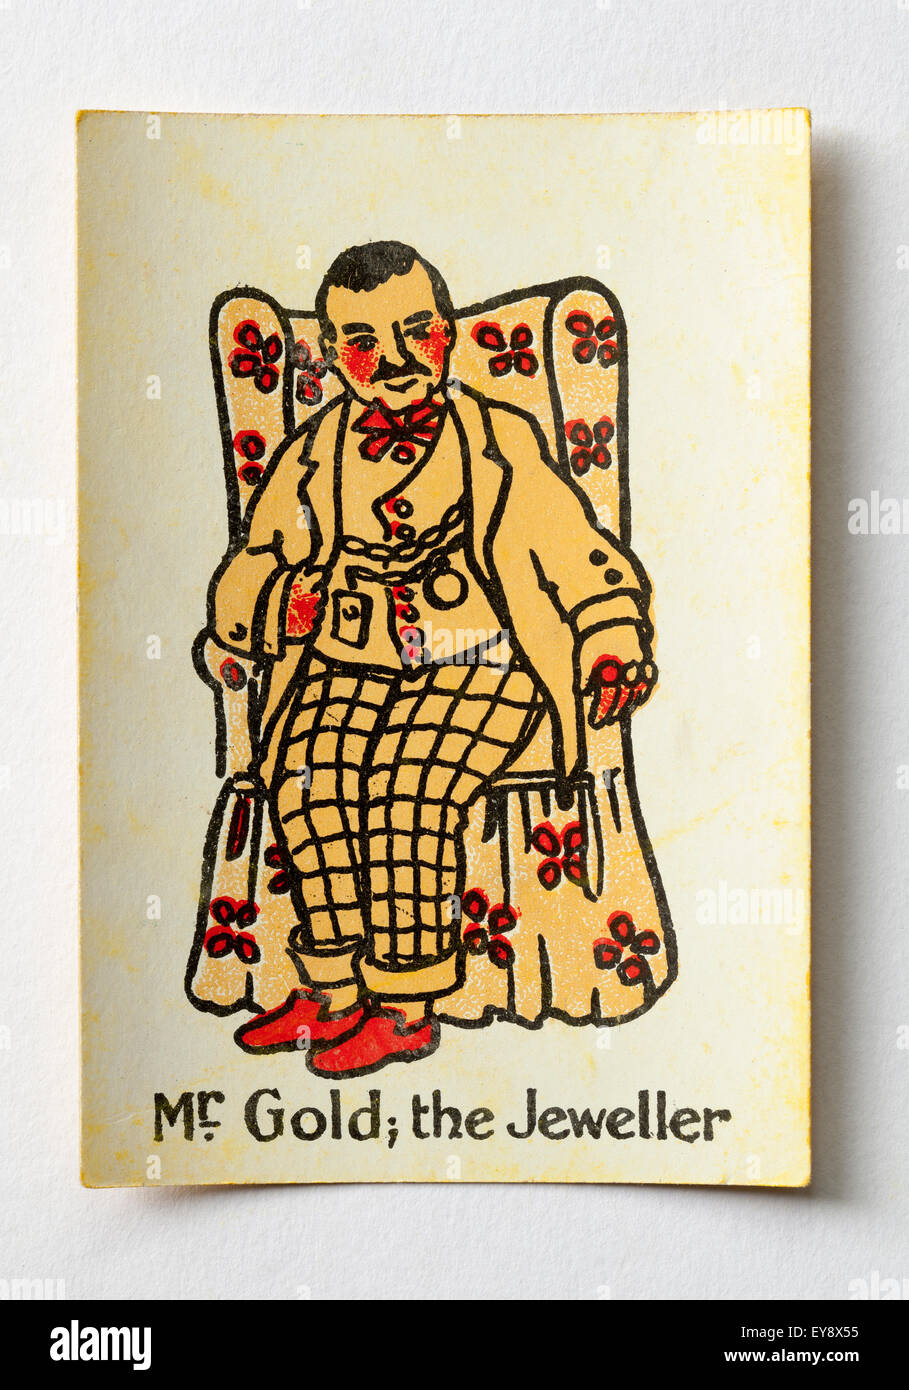 Signor Gold il gioielliere carta da gioco da famiglie felici gioco di carte Foto Stock